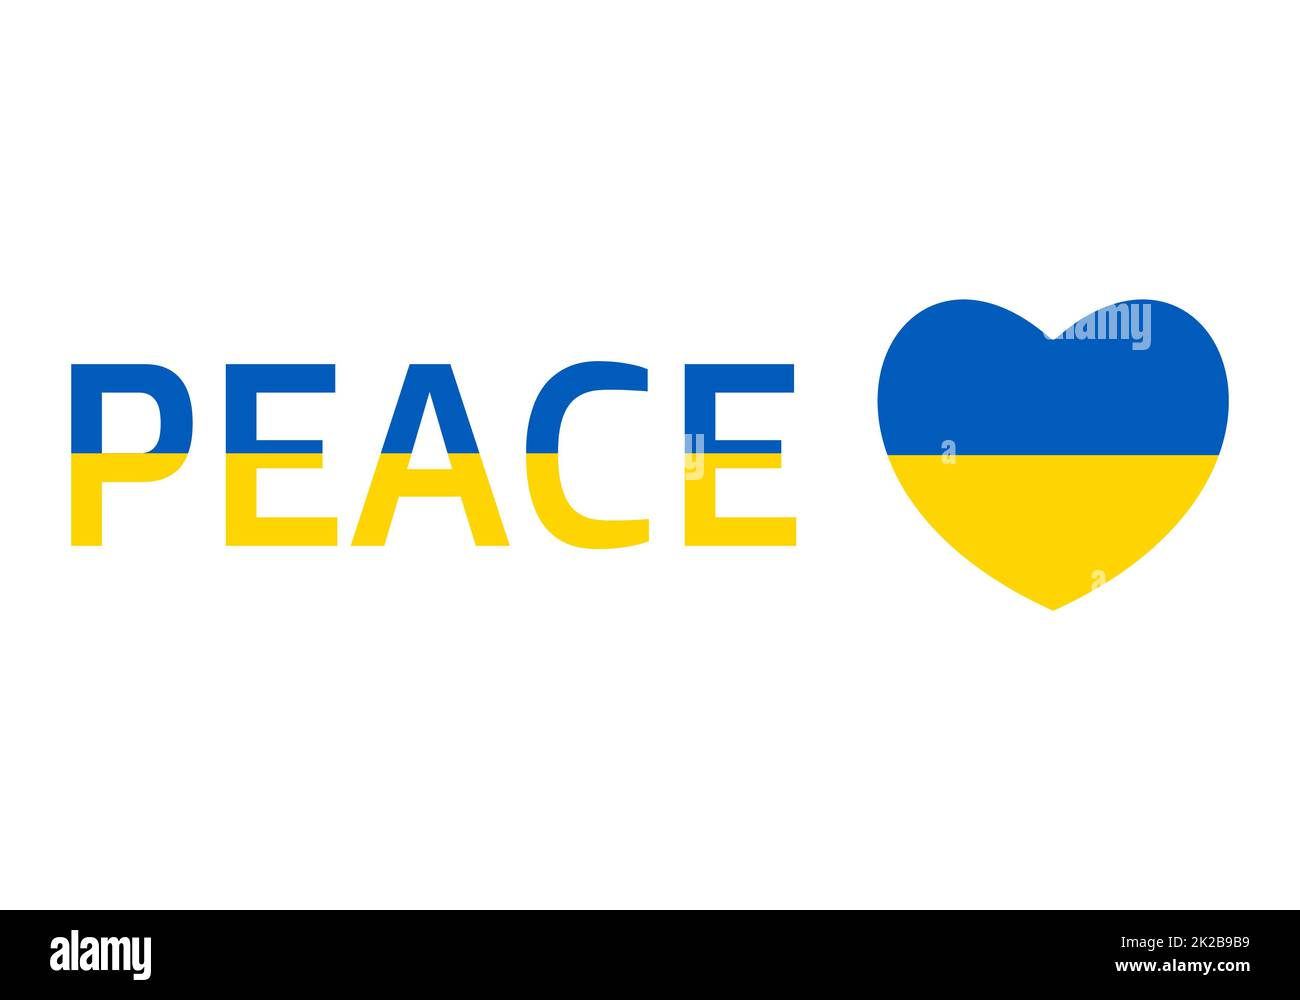 Das Flaggensymbol der Ukraine in Form von Herz- und Friedenstext. Abstrakte patriotische ukrainische Flagge mit Liebessymbol. Konzeptionelle Idee - mit der Ukraine im Herzen. Unterstützung des Landes während der Besatzung. Stockfoto